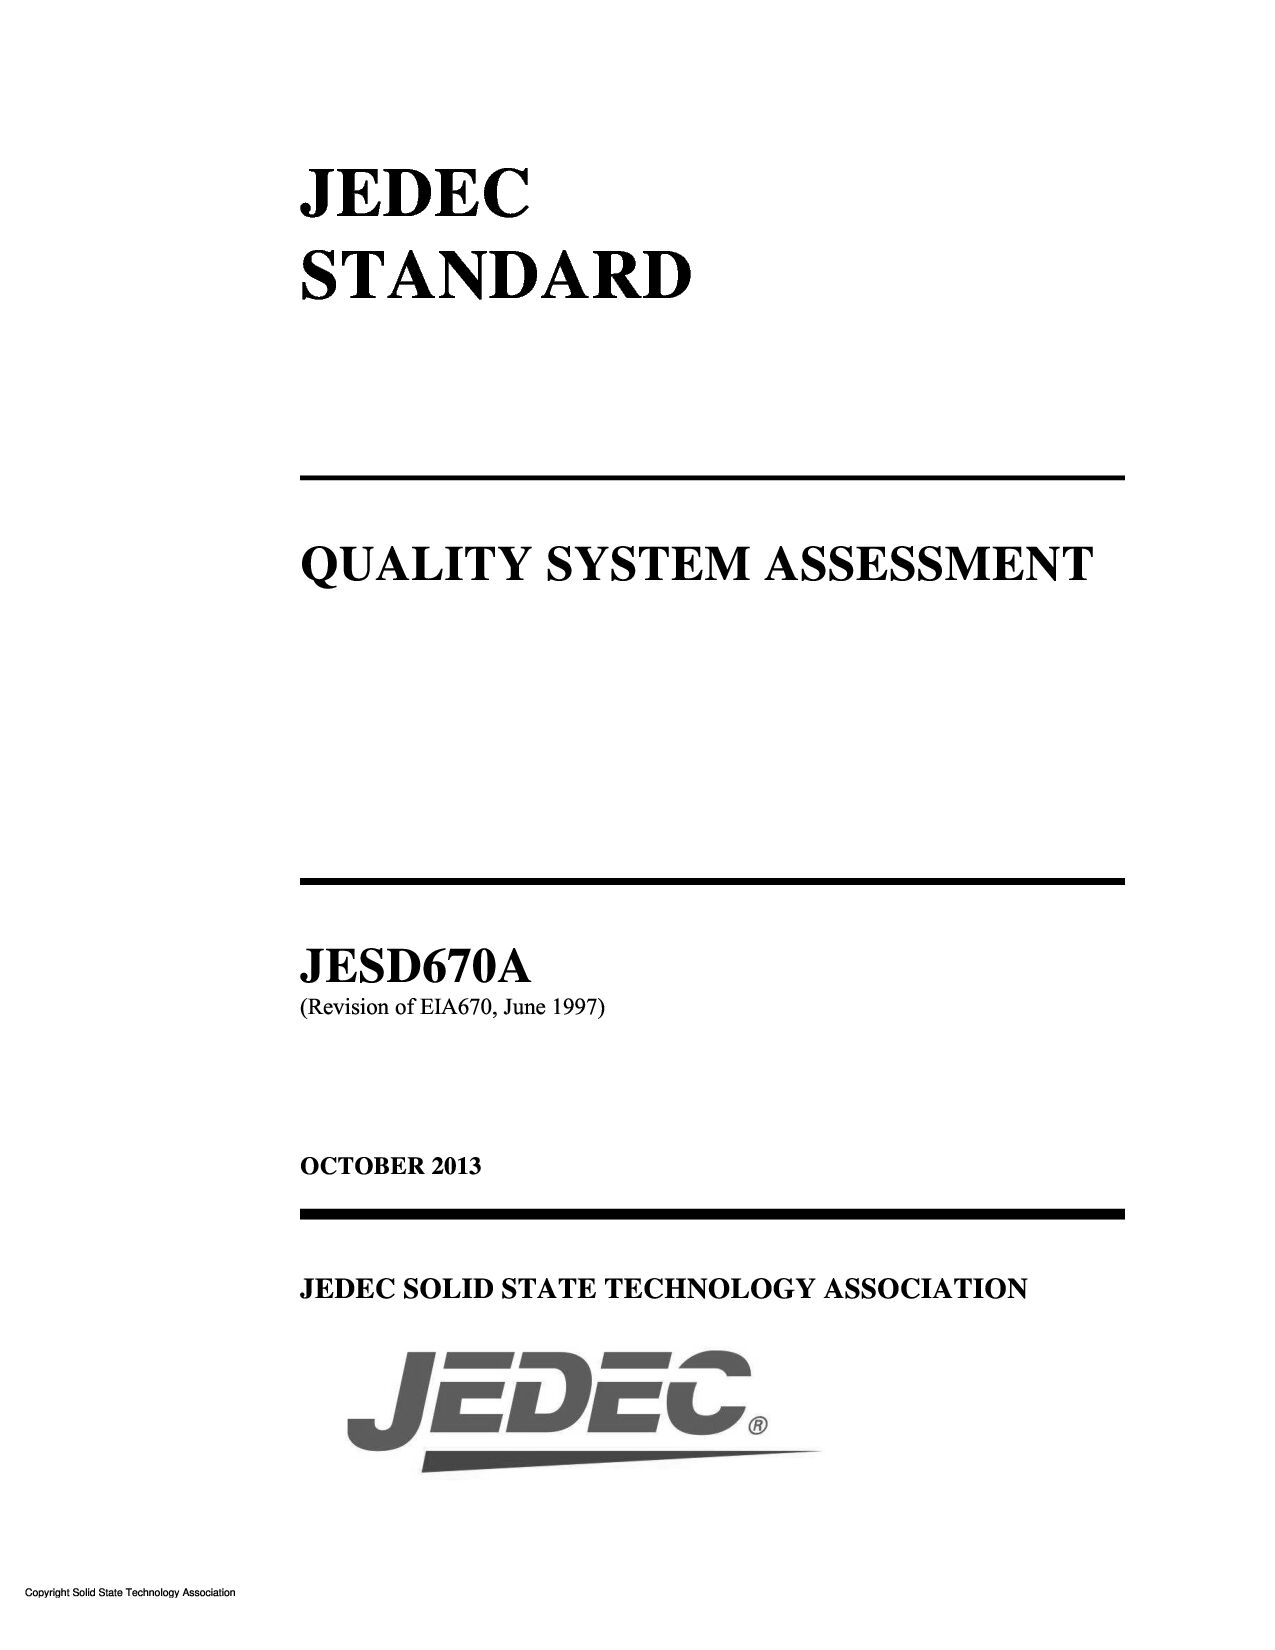 JEDEC JESD670A-2013封面图